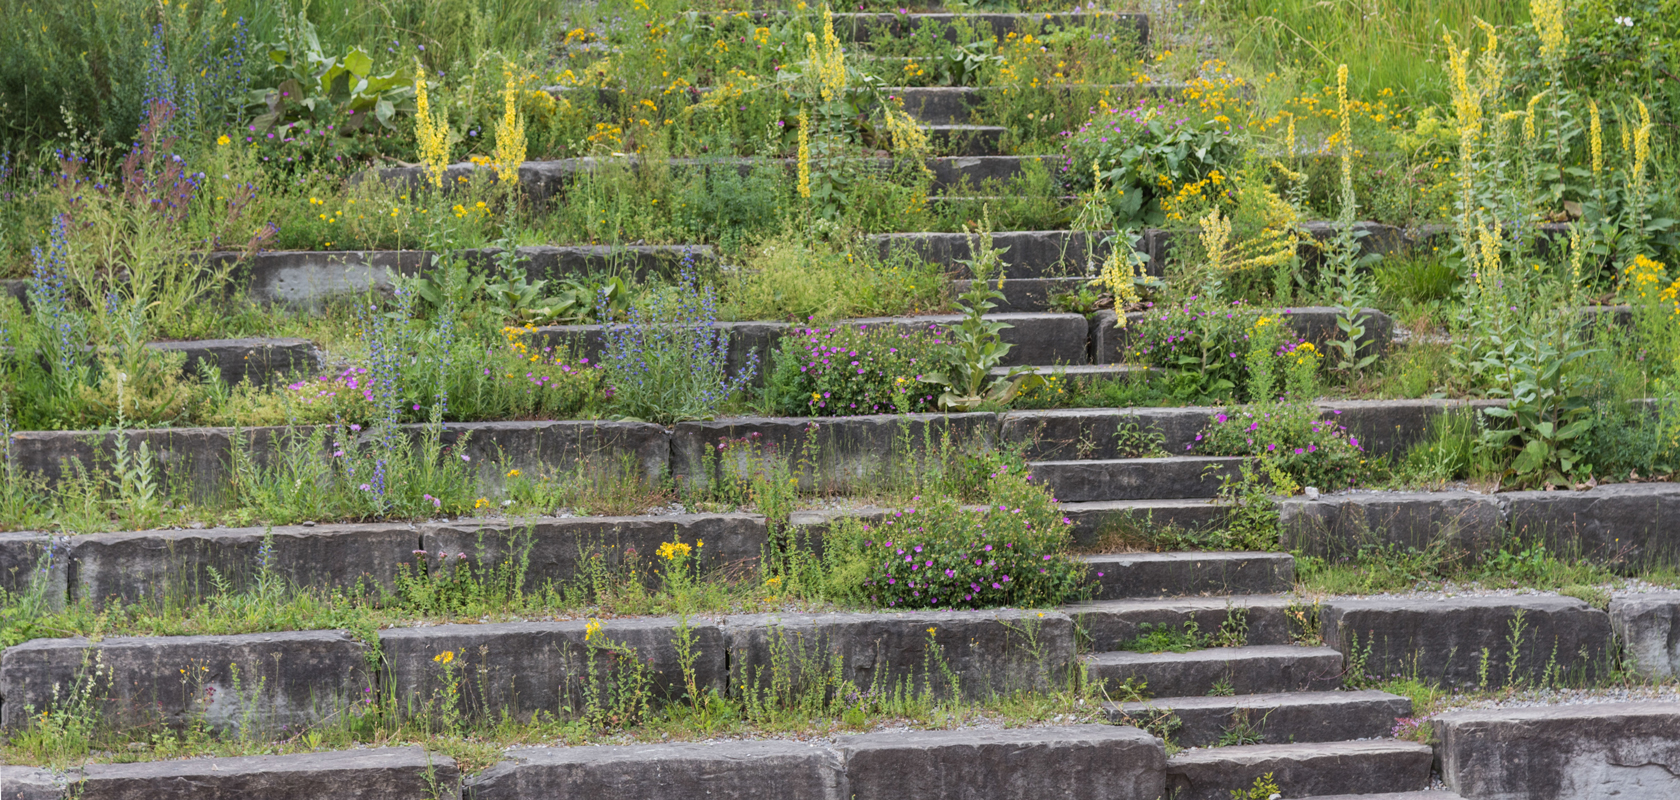 Begrünte Treppe mit Wildblumen und Kräutern